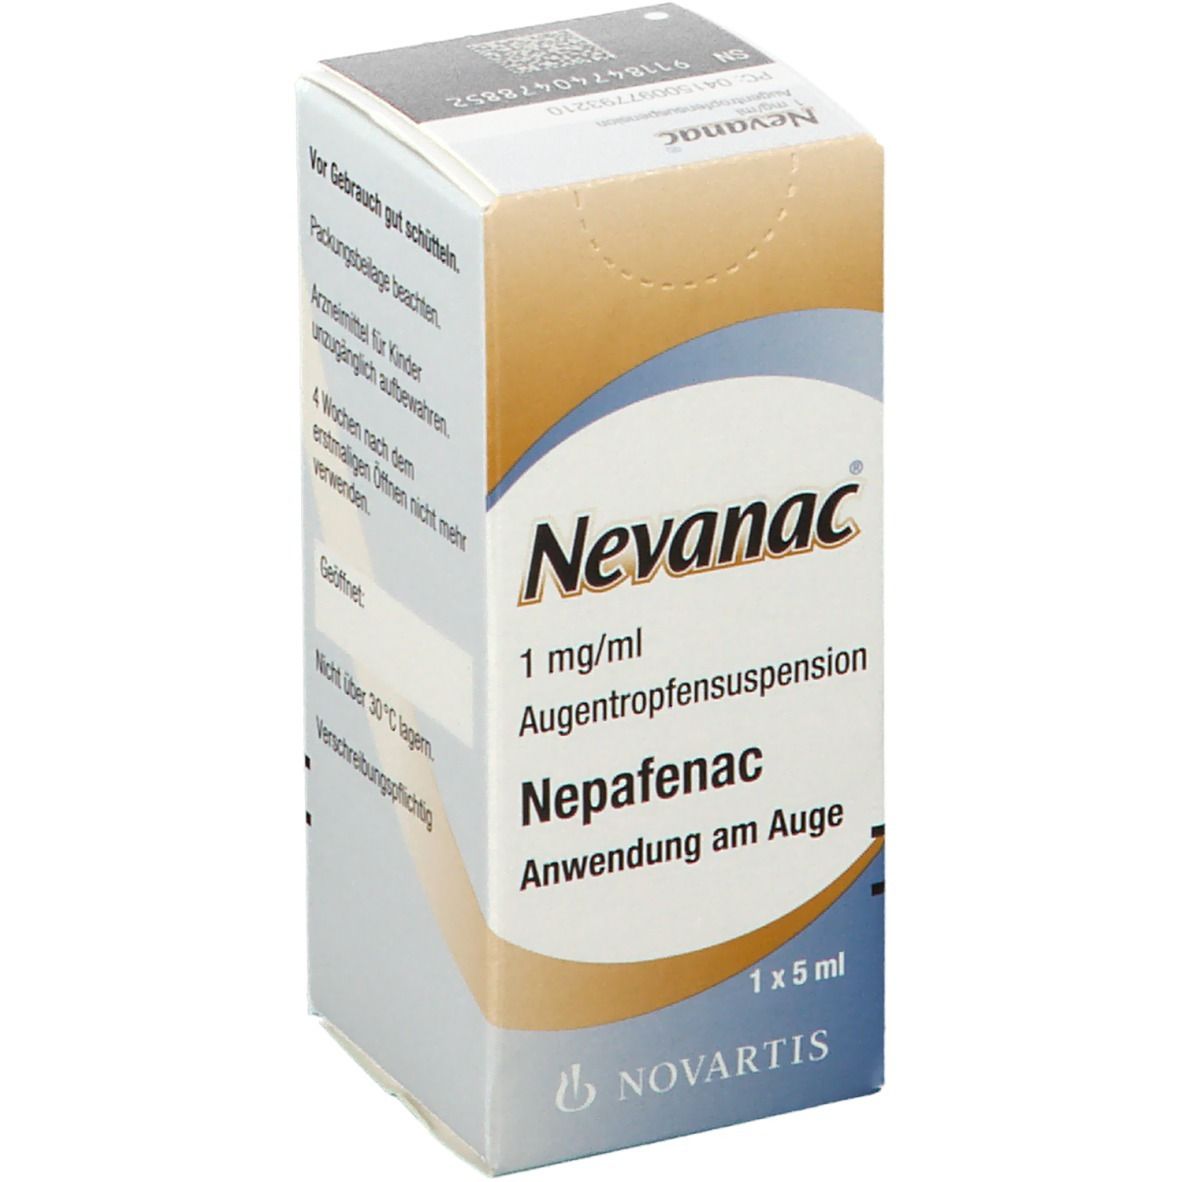 Nevanac® 1 mg/ml